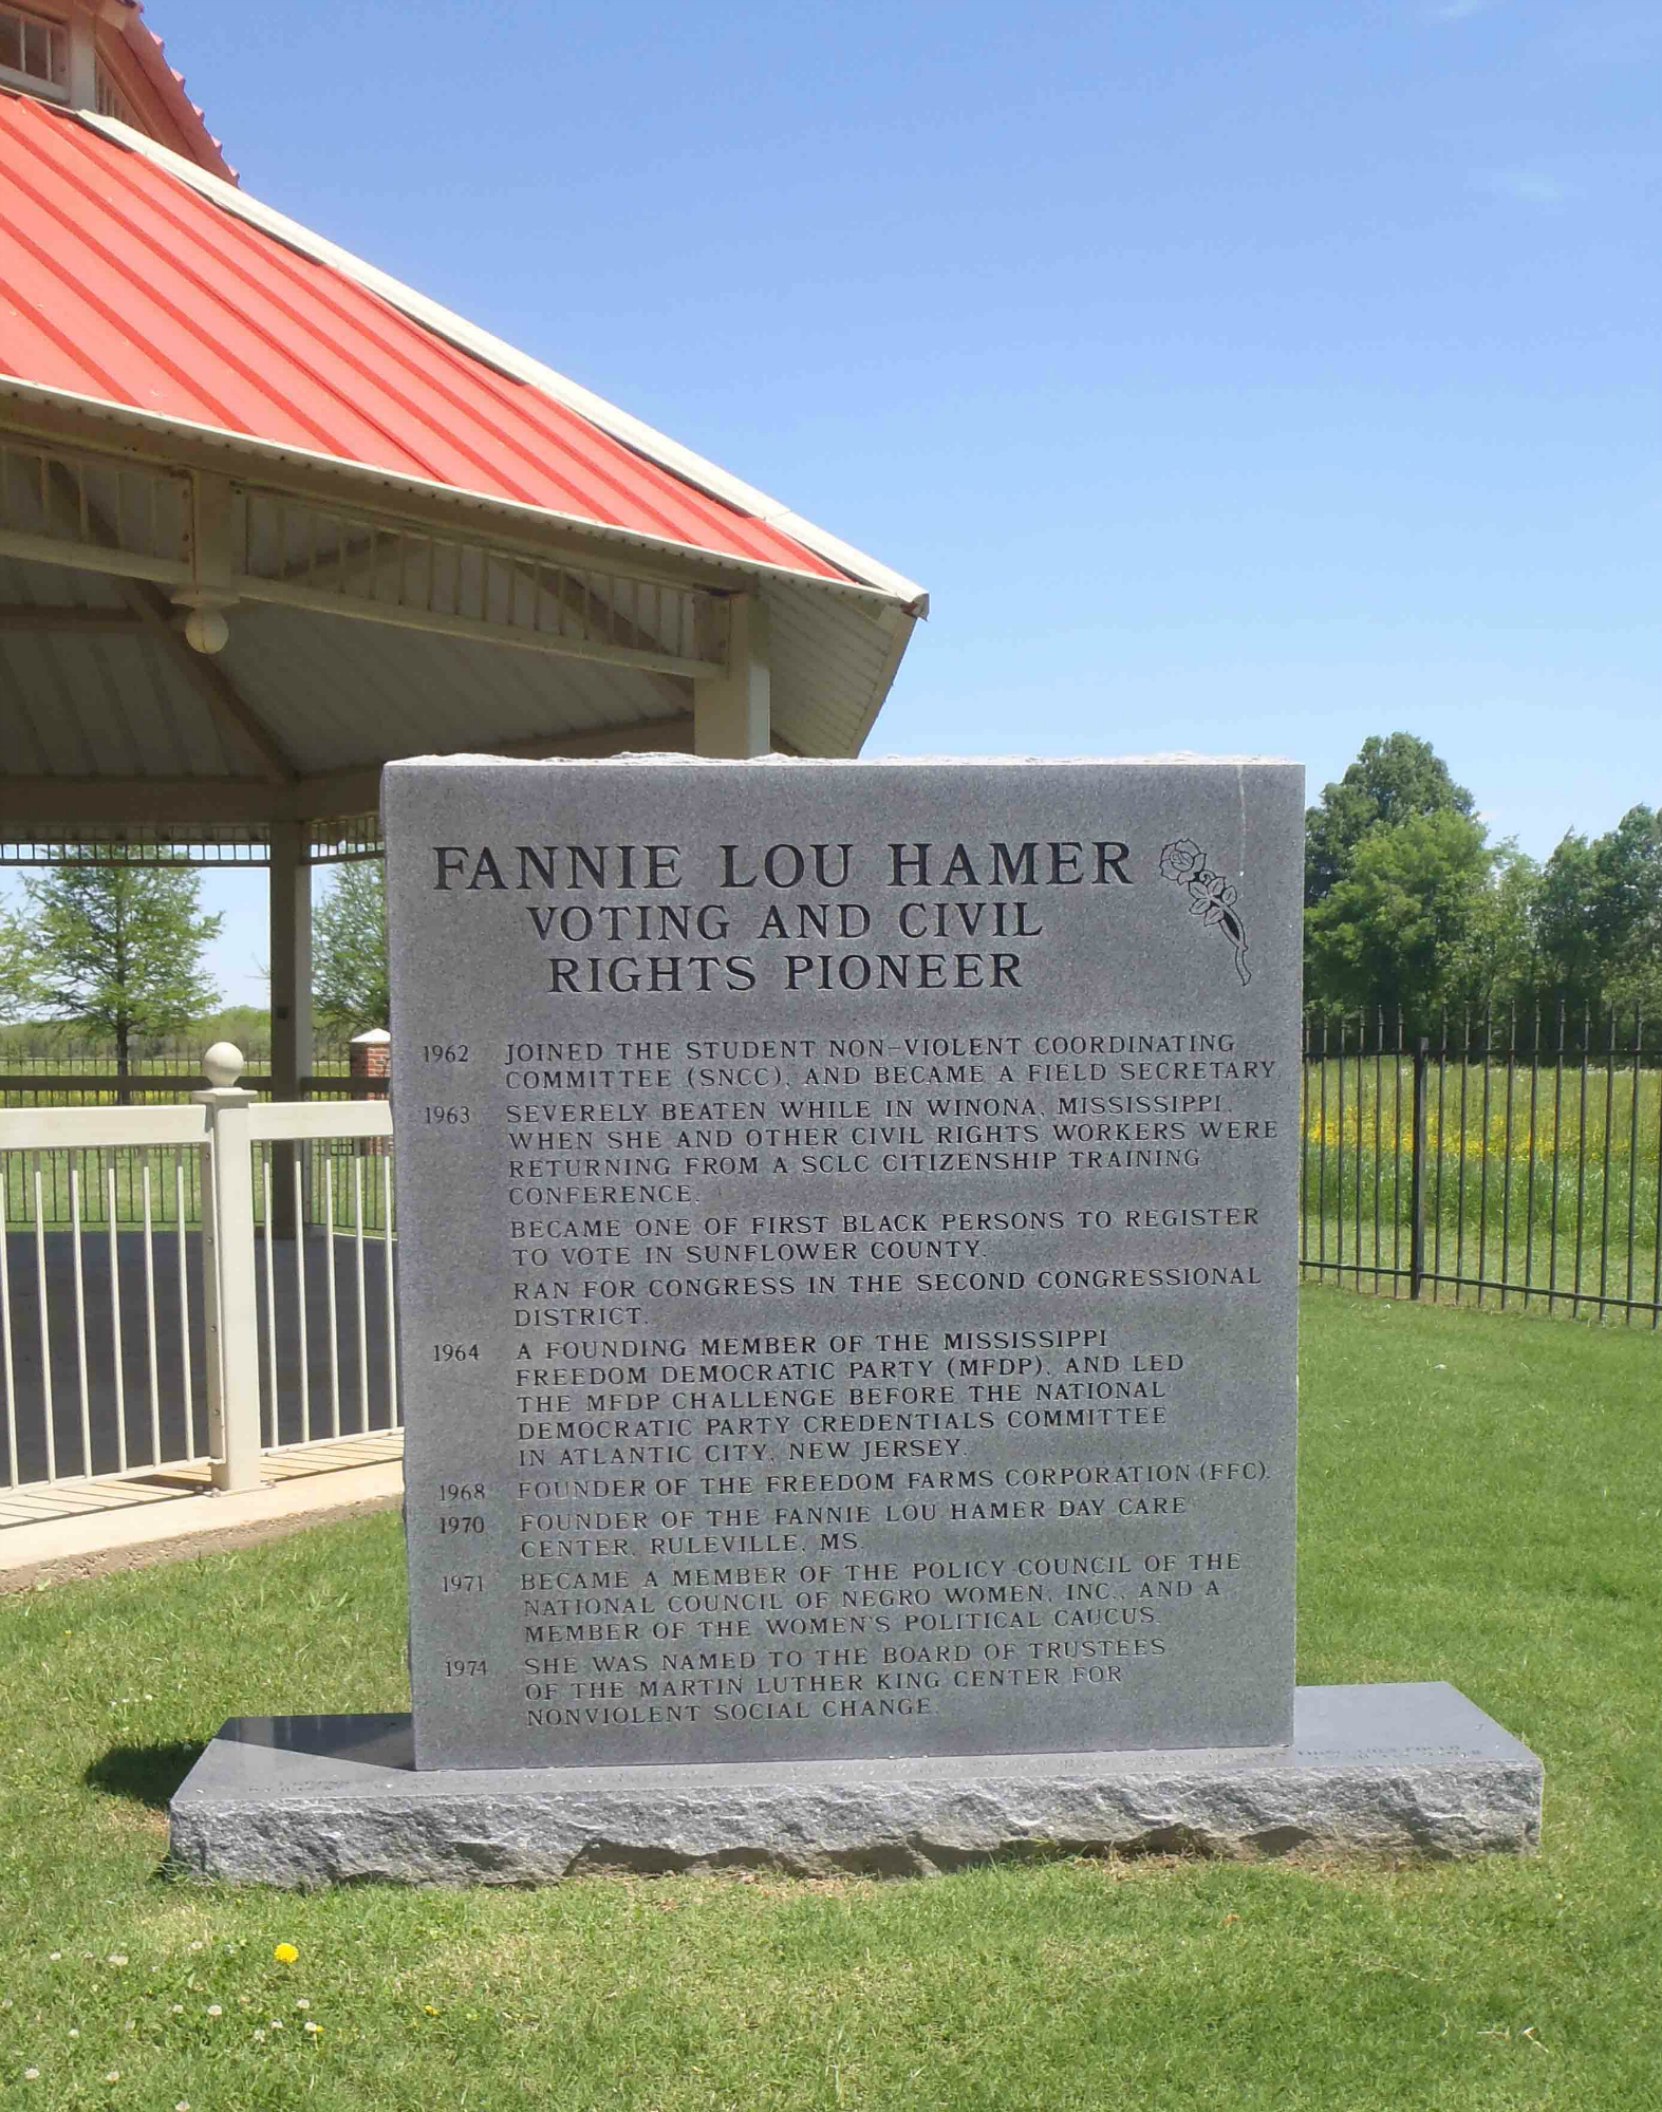 Fanny Lou Hamer commemorative plaque, Fanny Lou Hamer Memorial Garden, Ruleville, Mississippi